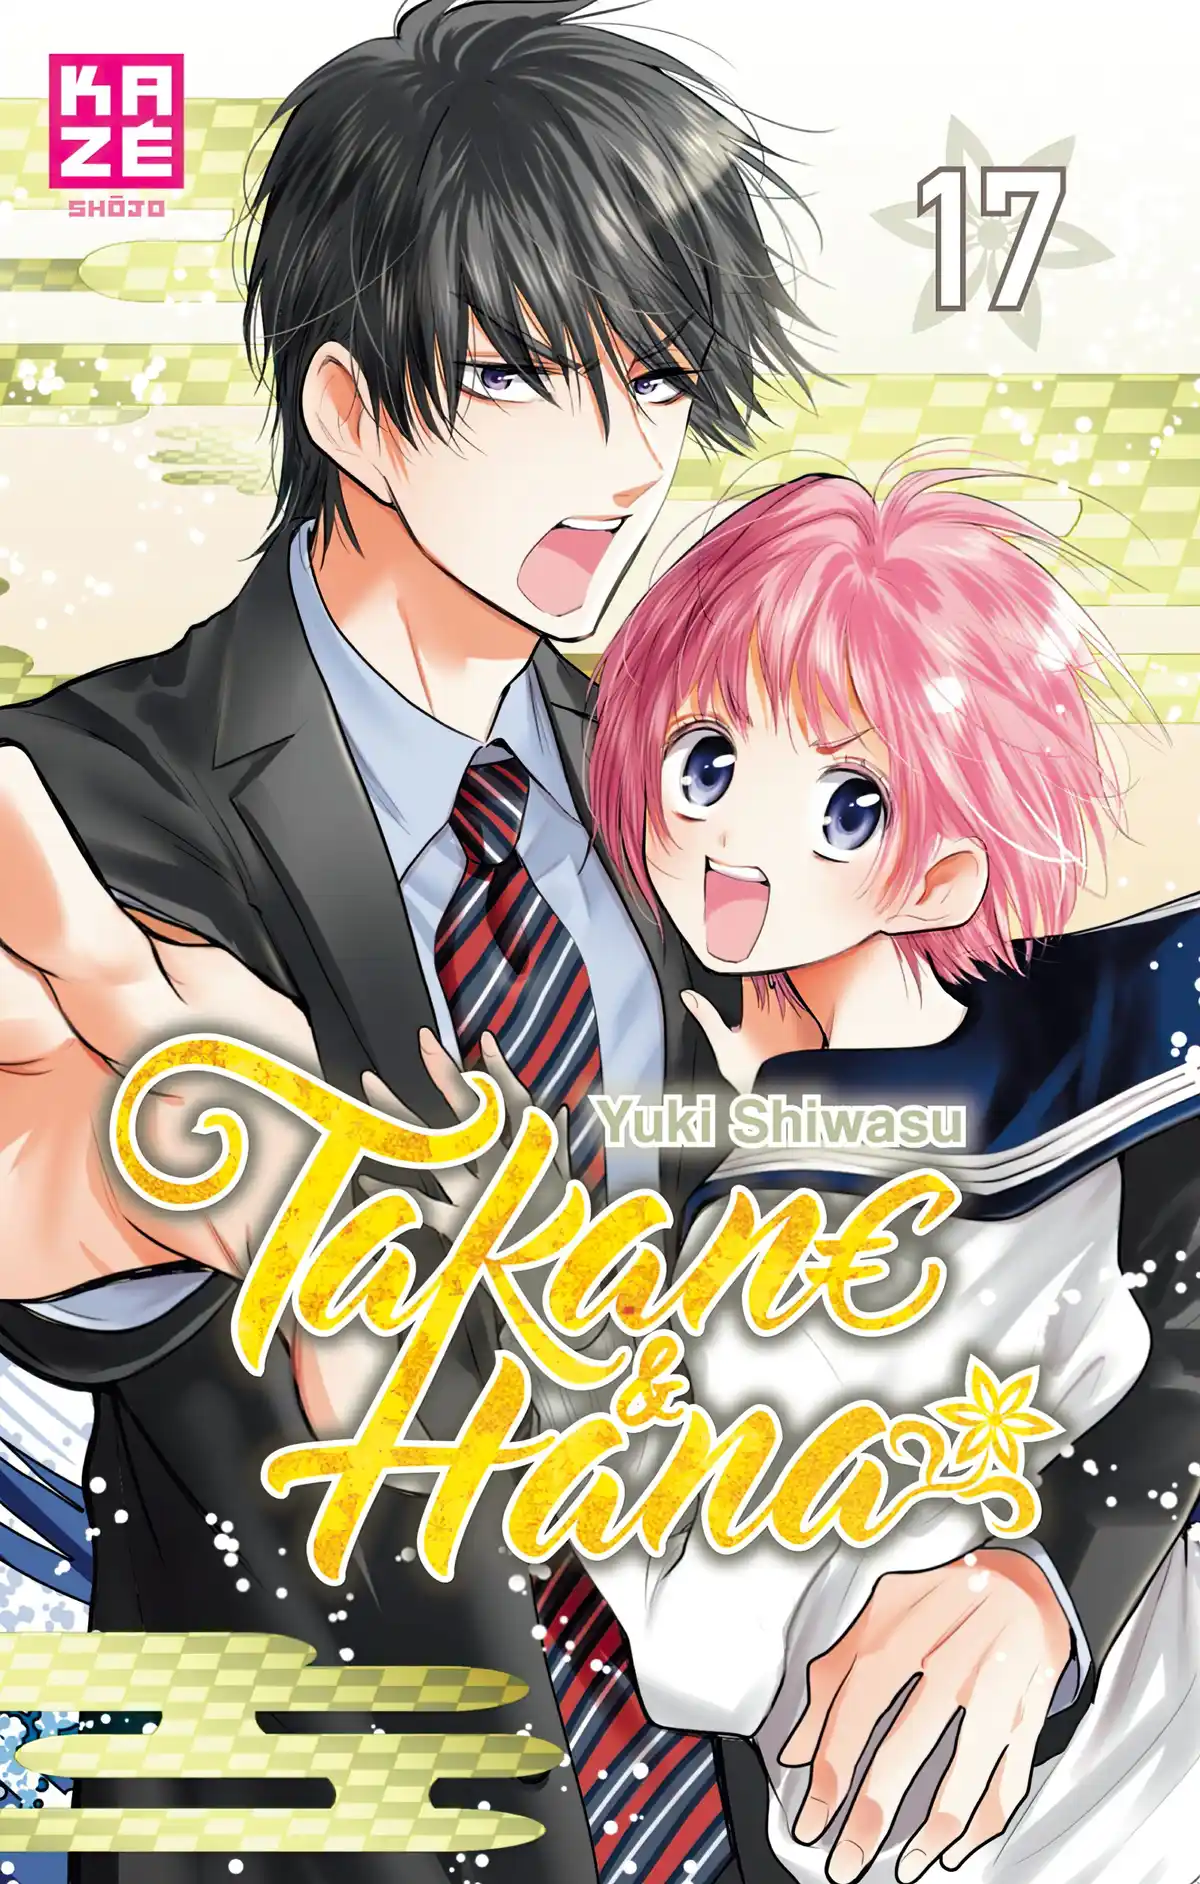 Takane & Hana Volume 17 page 1